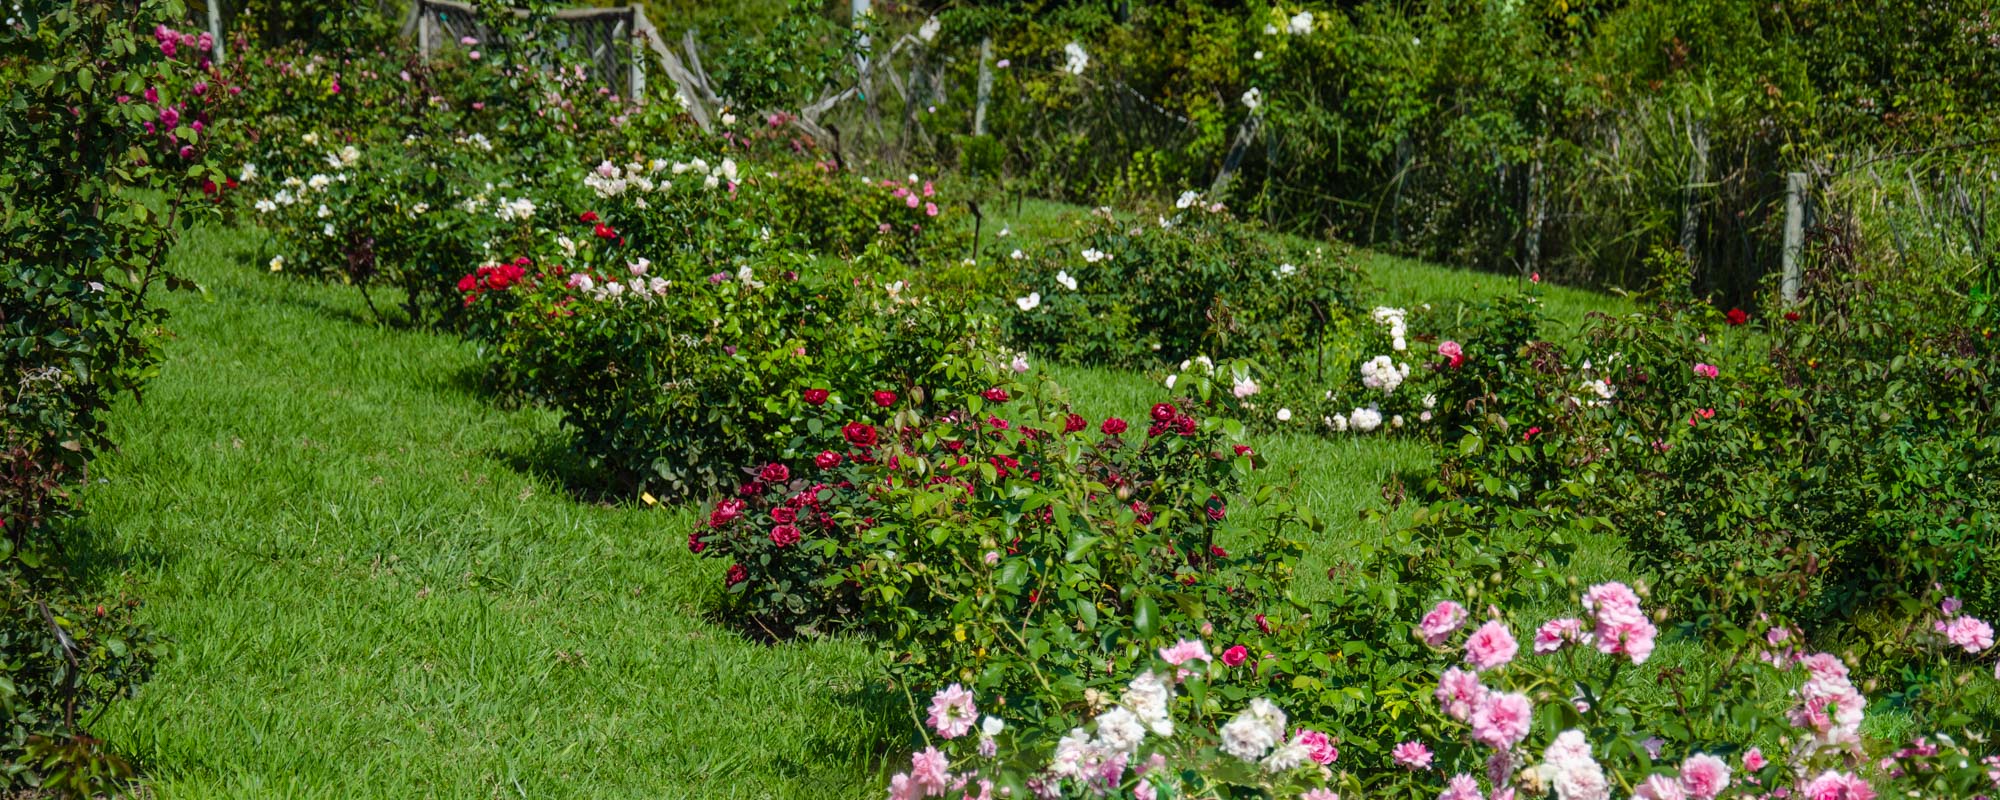 rosaleda de portes arbustivos